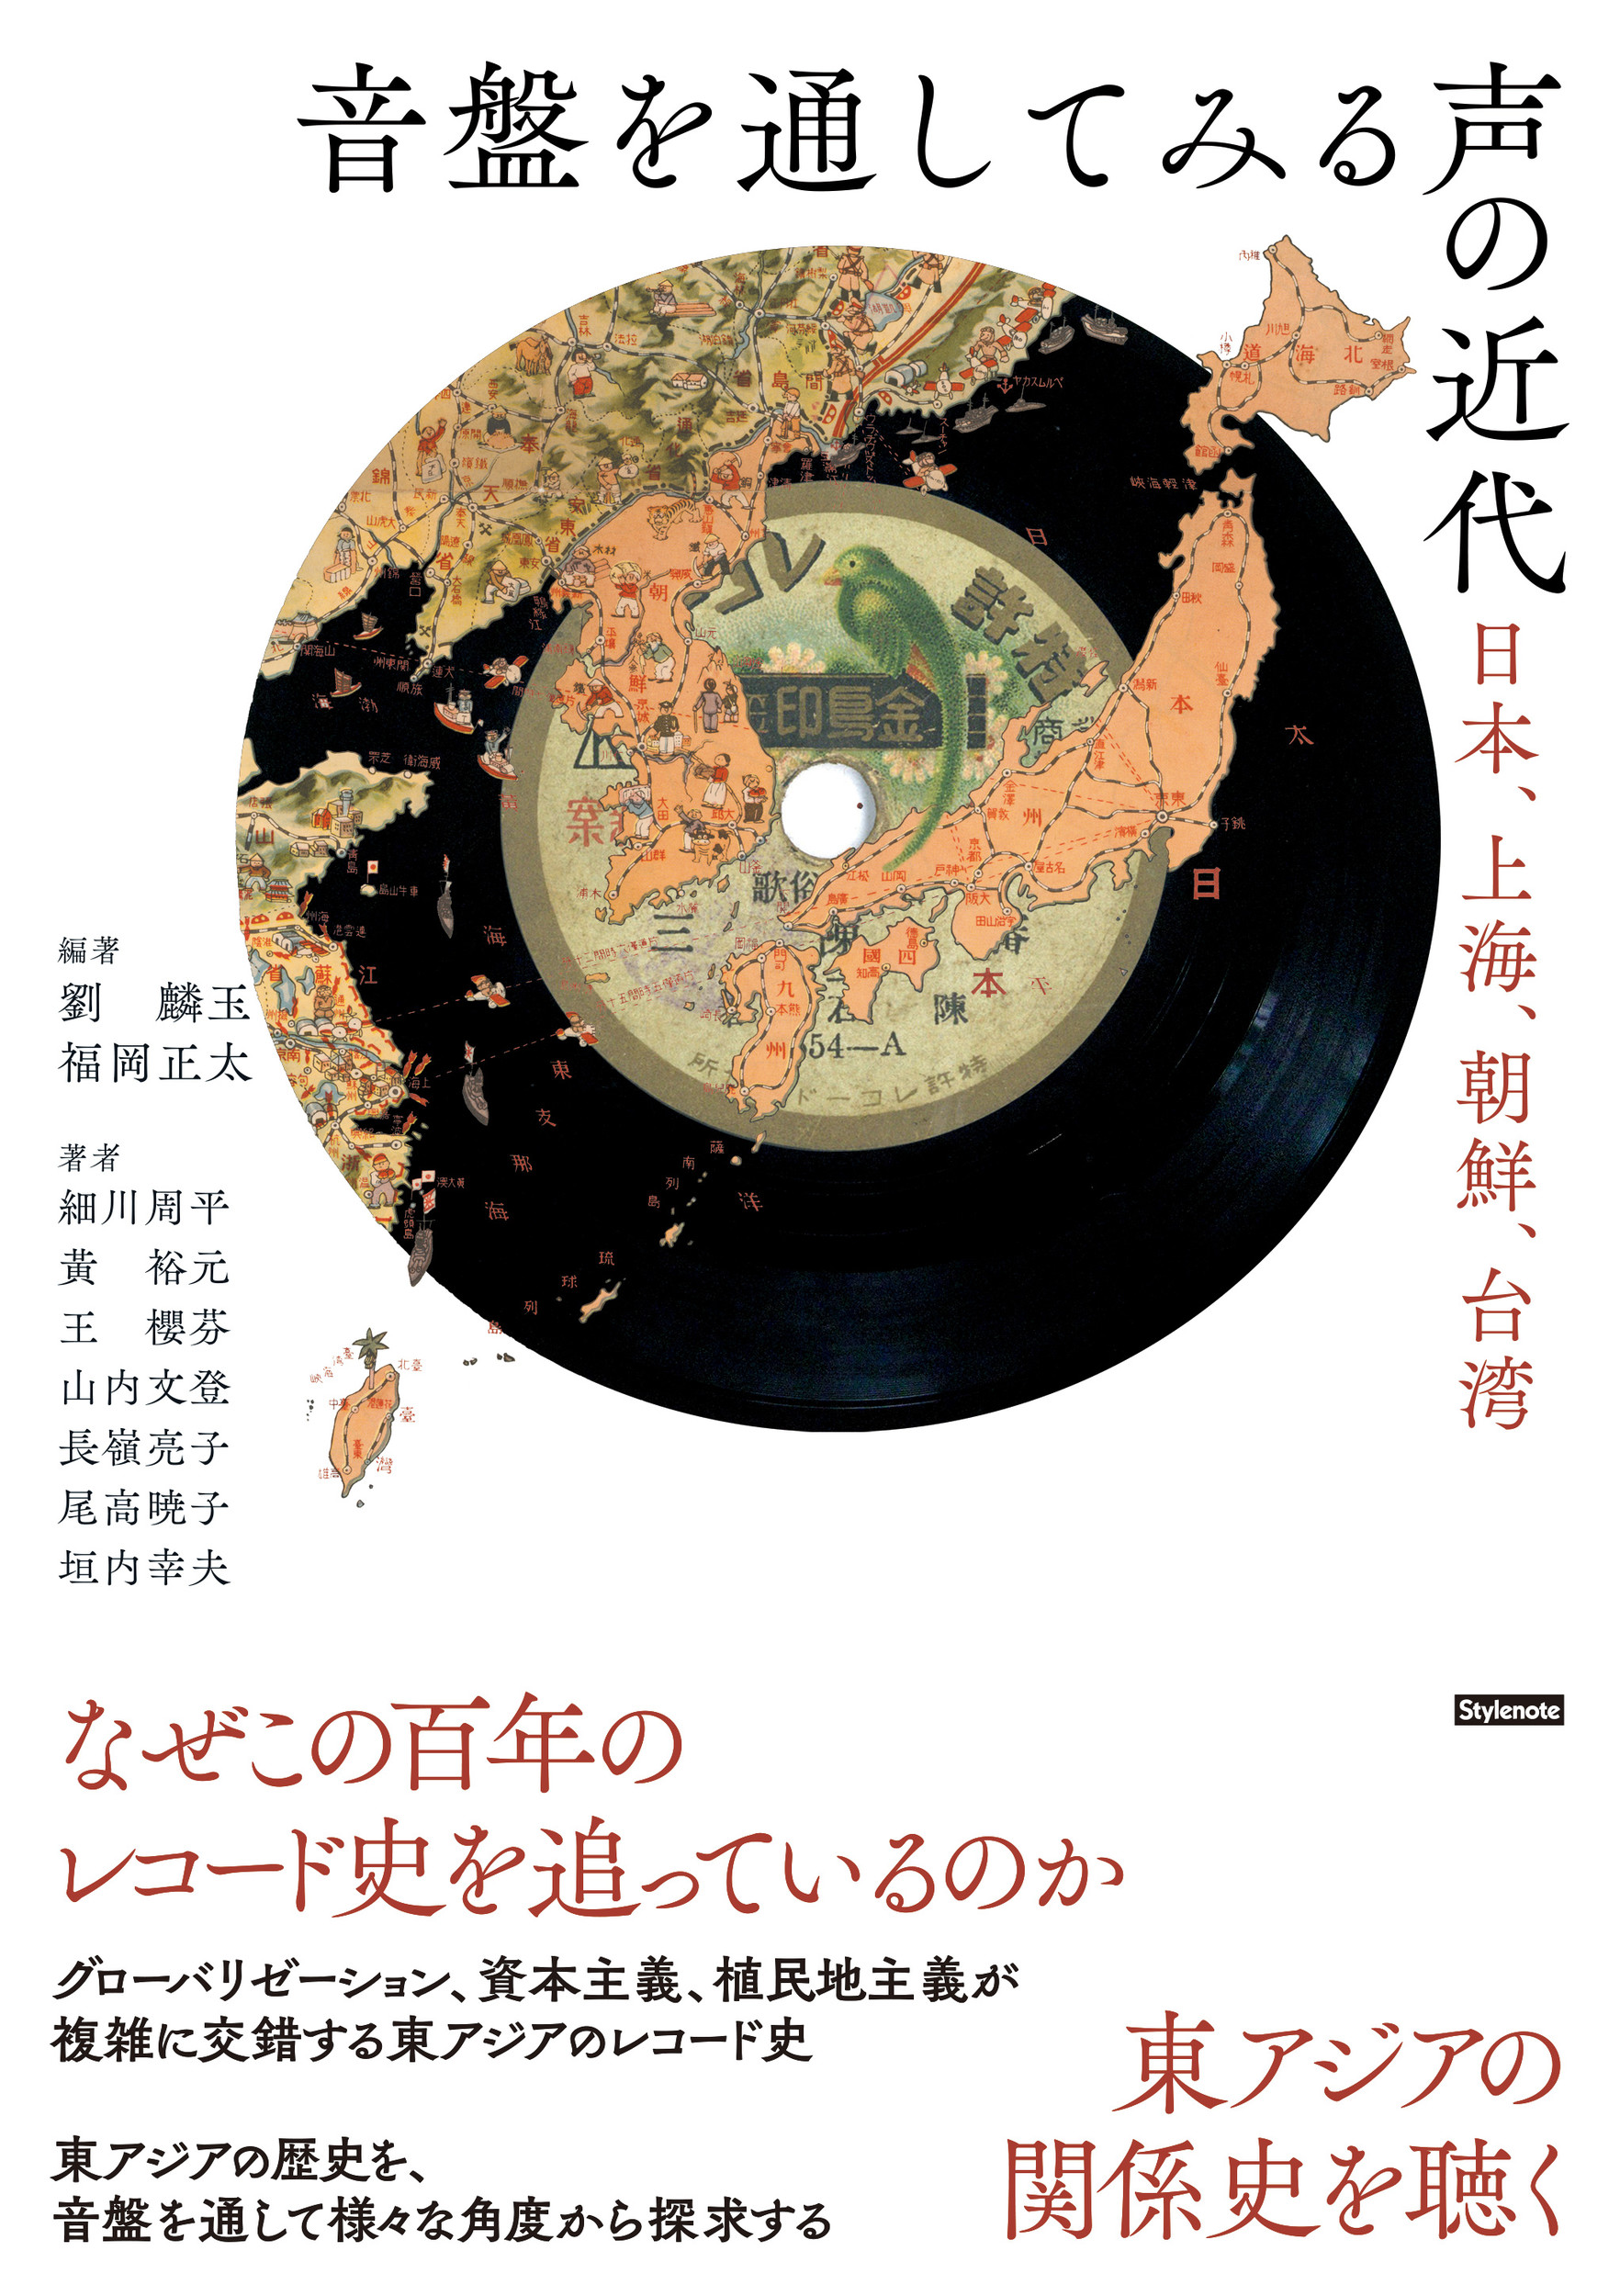 音盤を通してみる声の近代：日本、上海、朝鮮、台湾